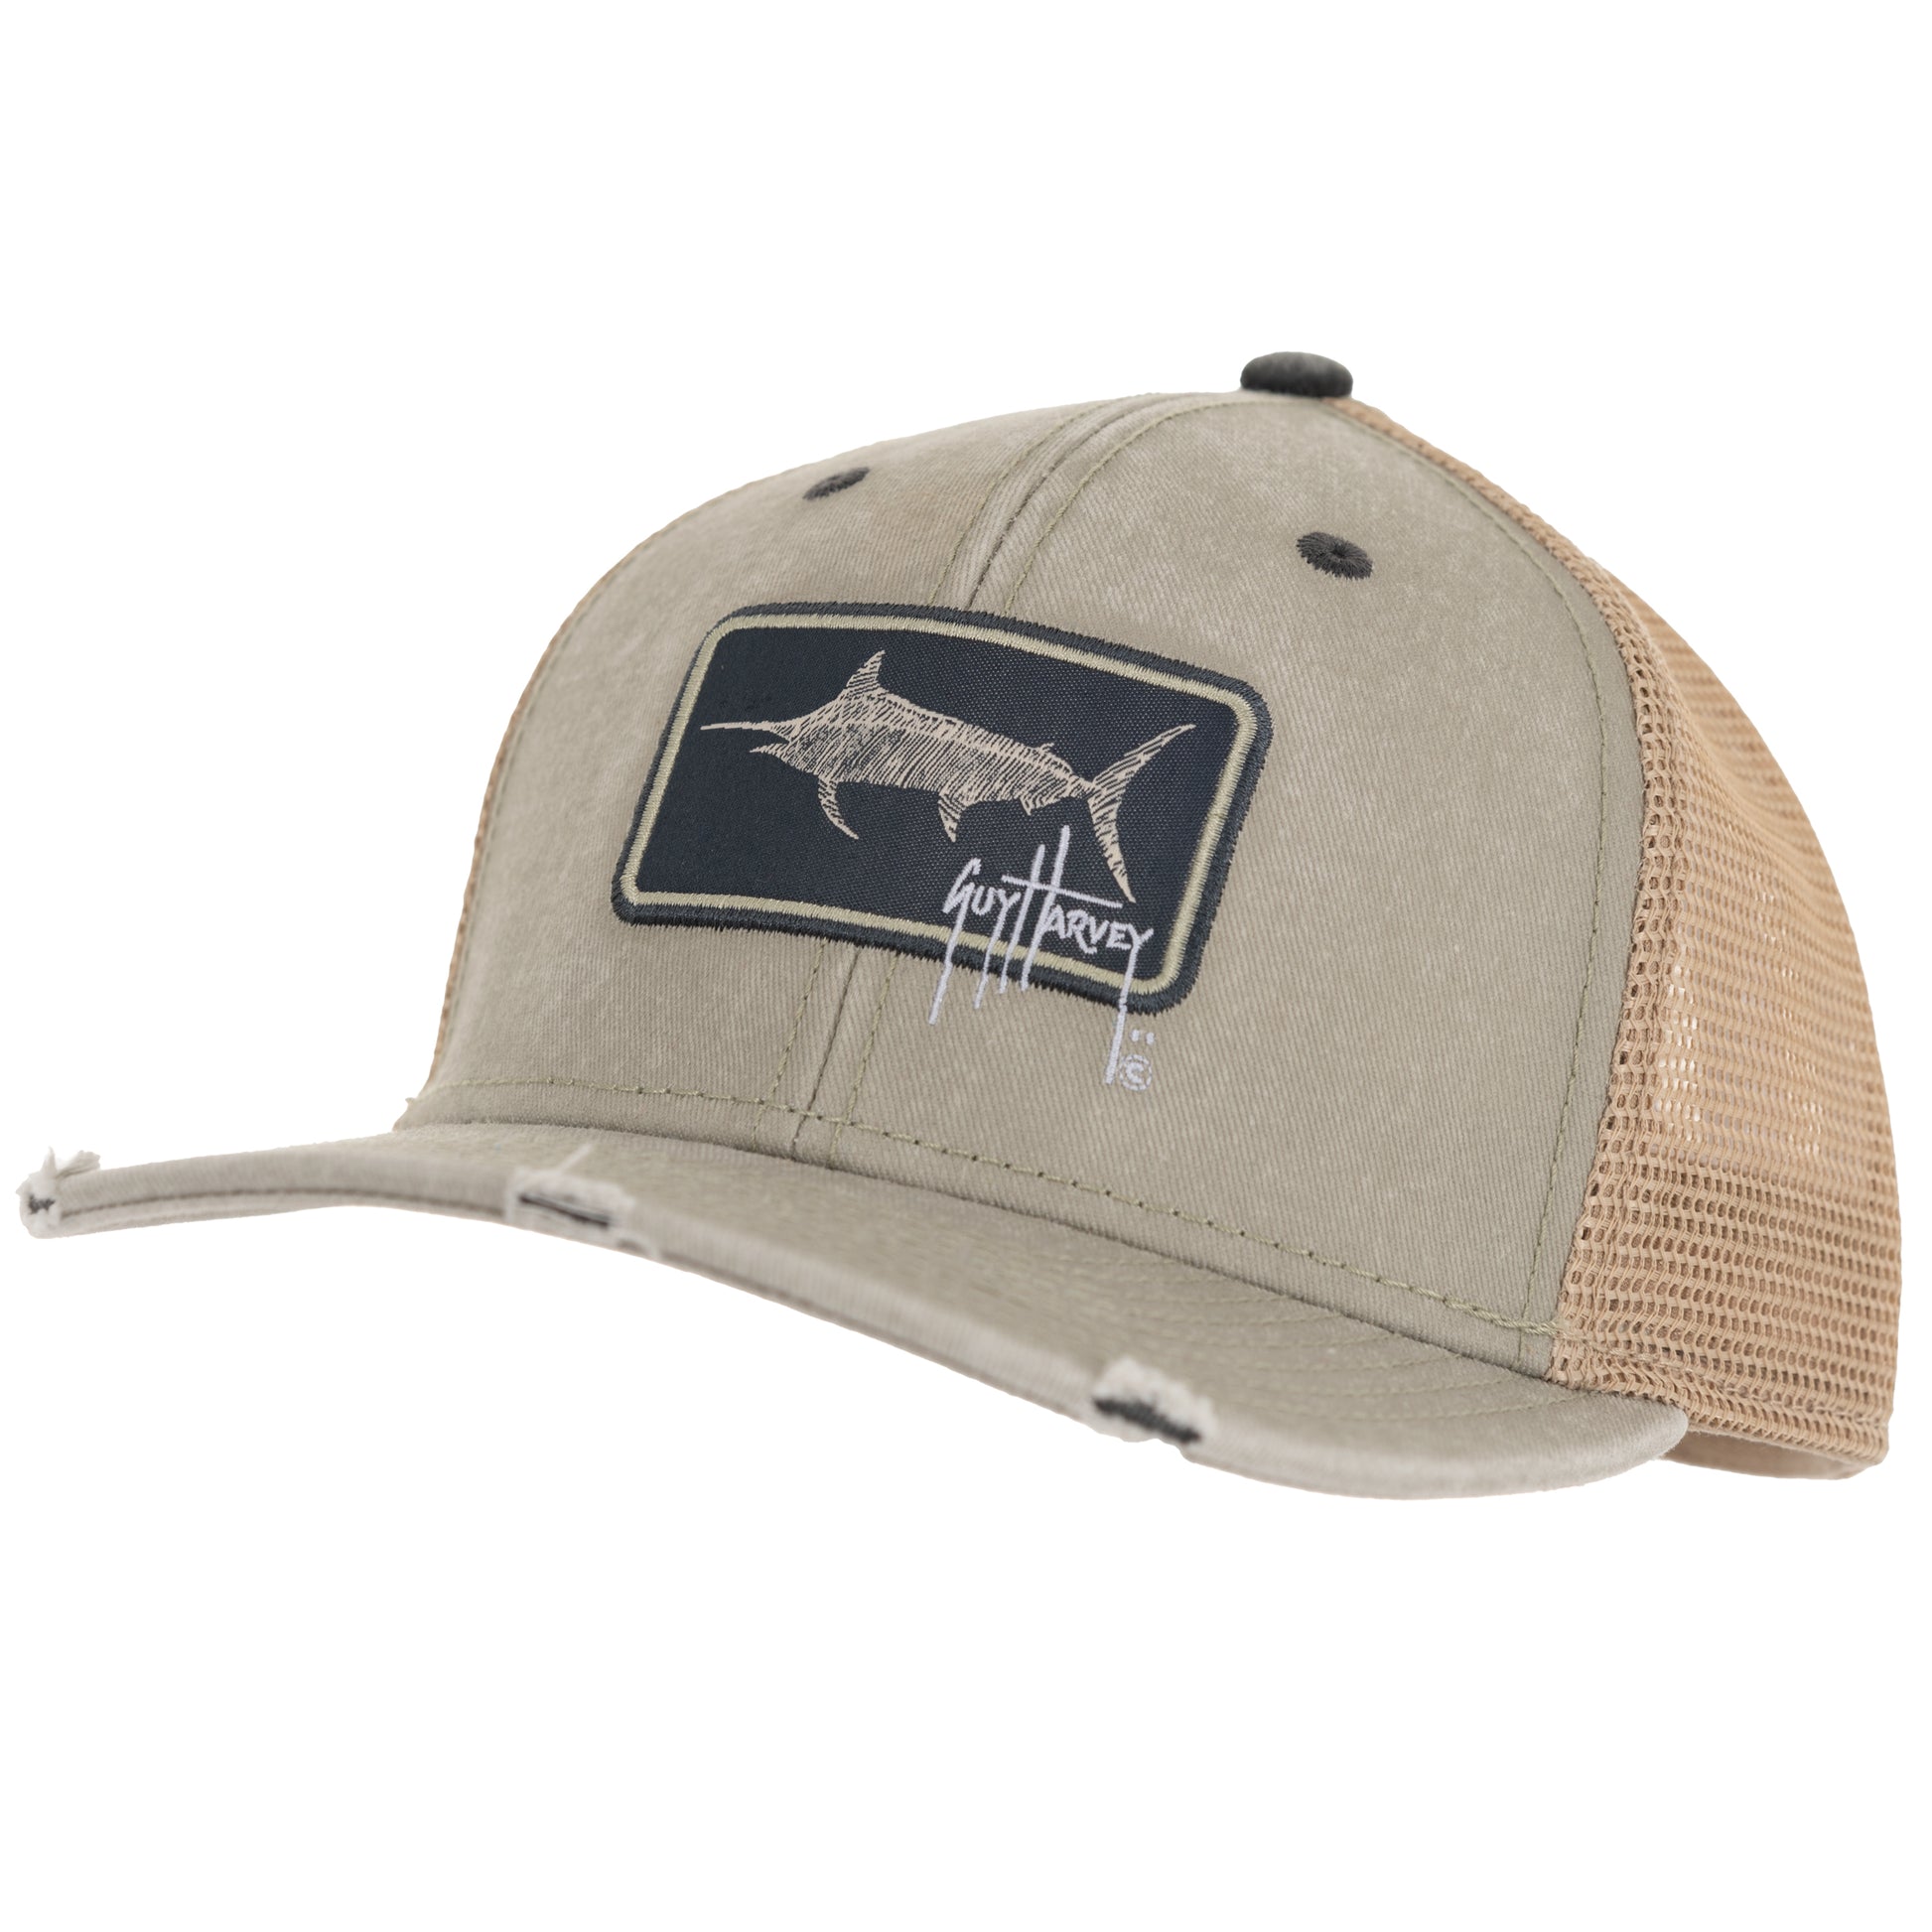 Men's Dove Billfish Patch Mesh Trucker Hat – Guy Harvey